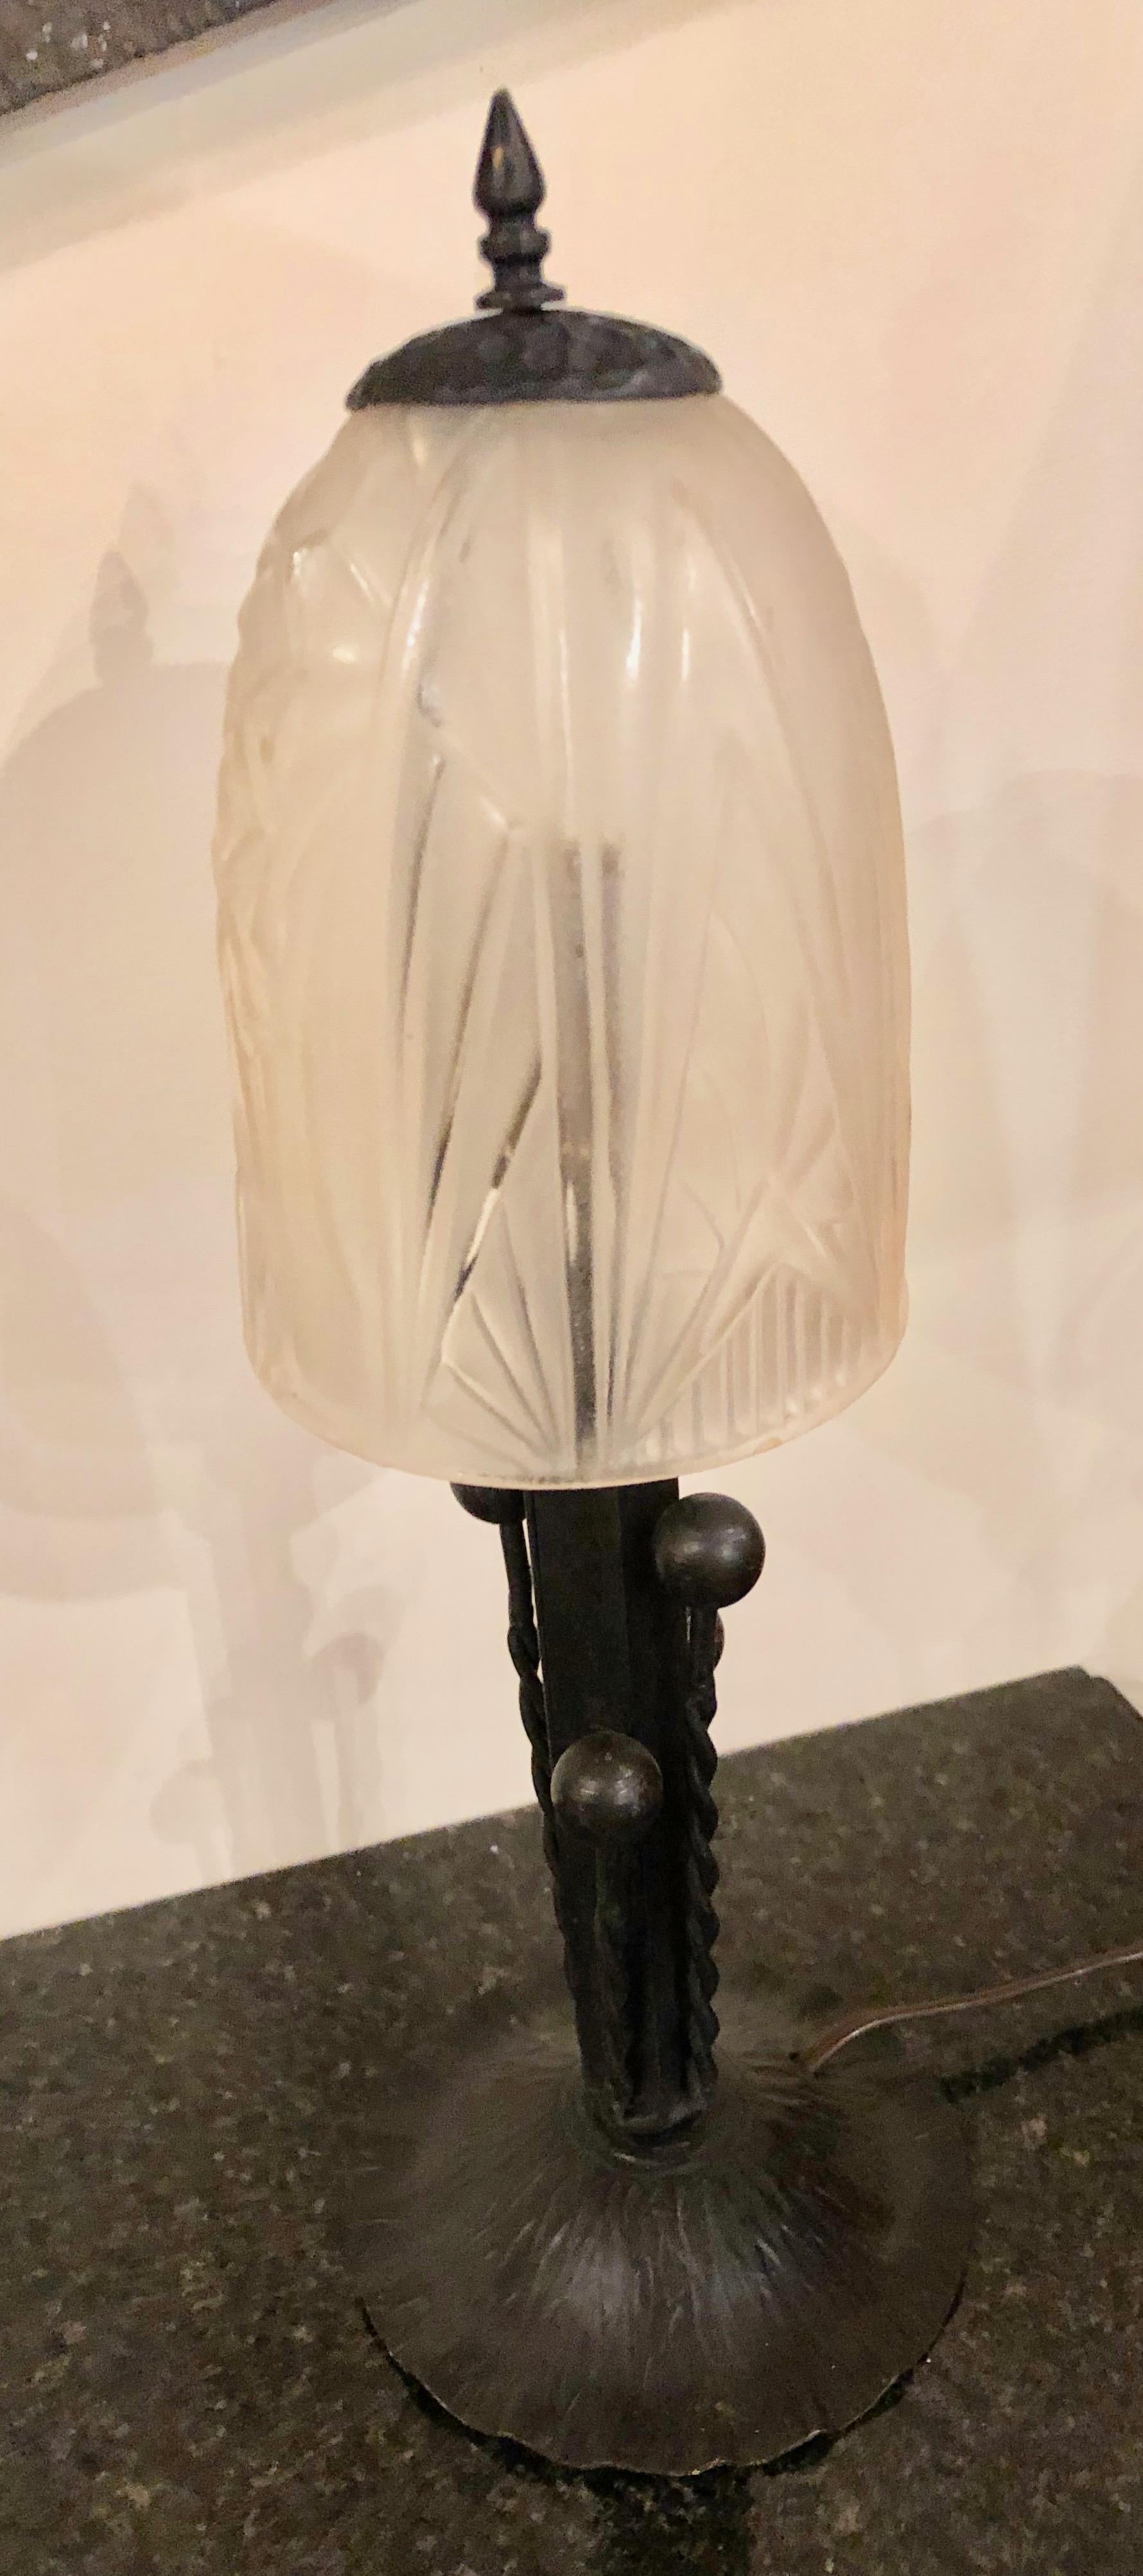 Einzigartige französische Tischlampe mit stilisiertem, geformtem Glas nach Degue oder Muller Freres. Einfache elegante Form und Design. Neu verkabelt mit originalem Ein- und Ausschalter und mit originaler französischer B-22 Steckdose. Entworfen um